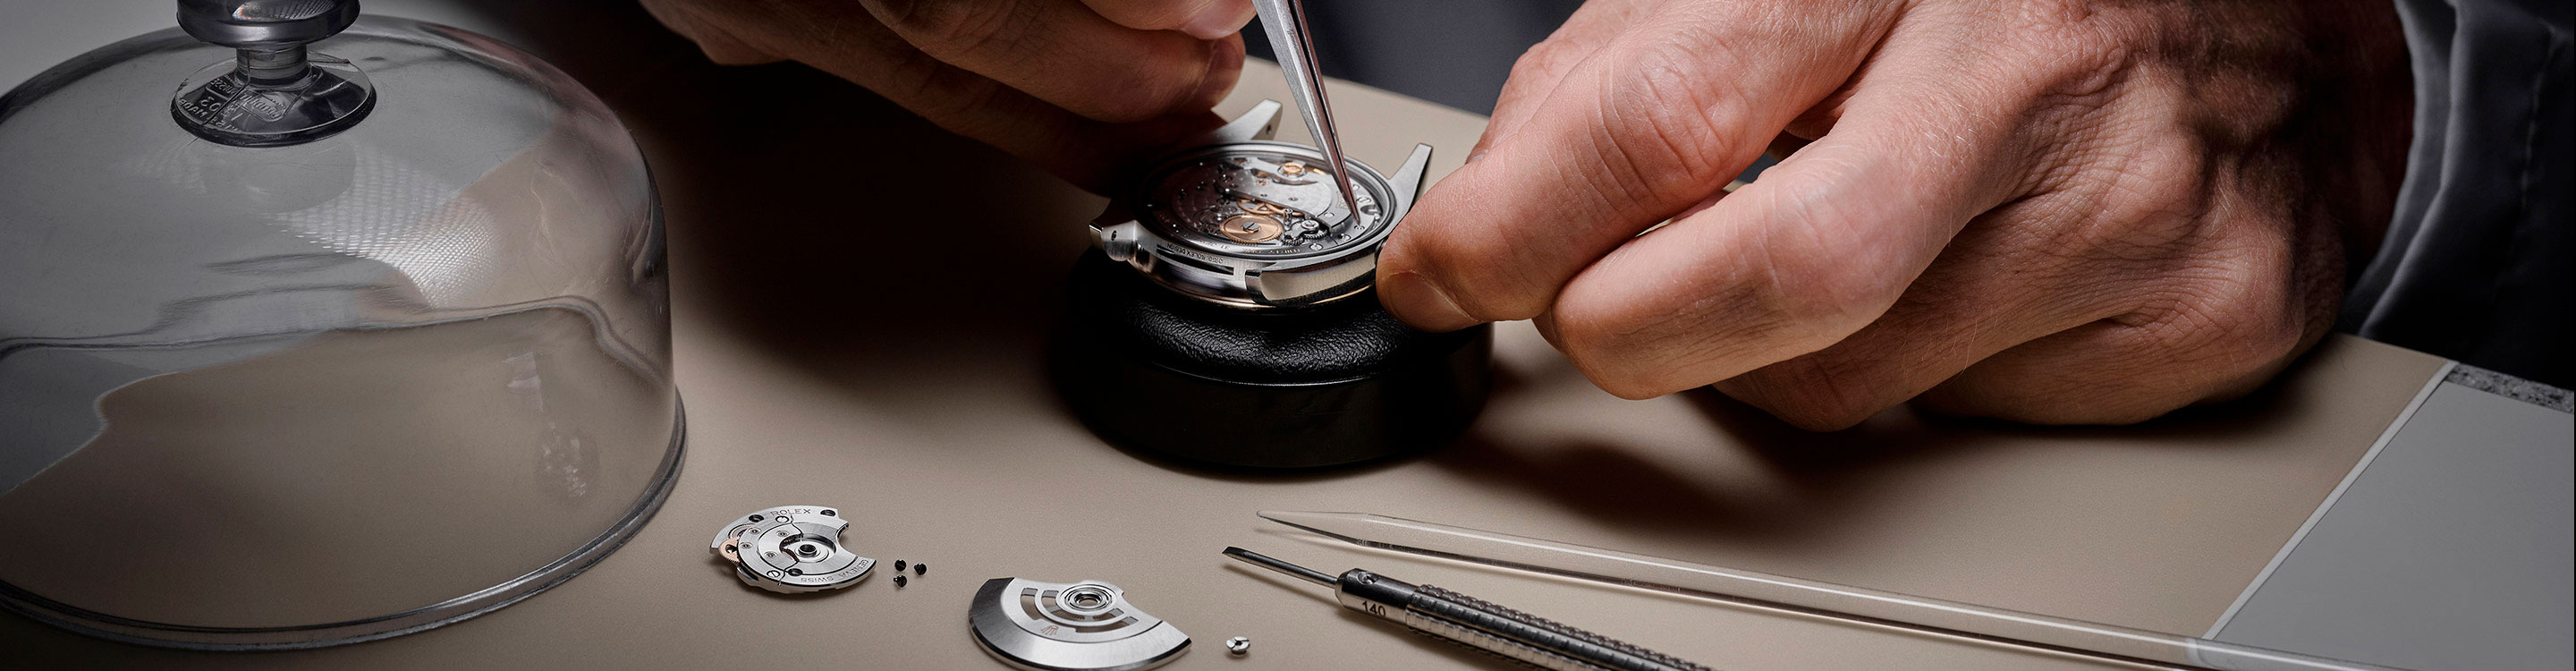 Contacto mantenimiento Rolex -Relojería Alemana